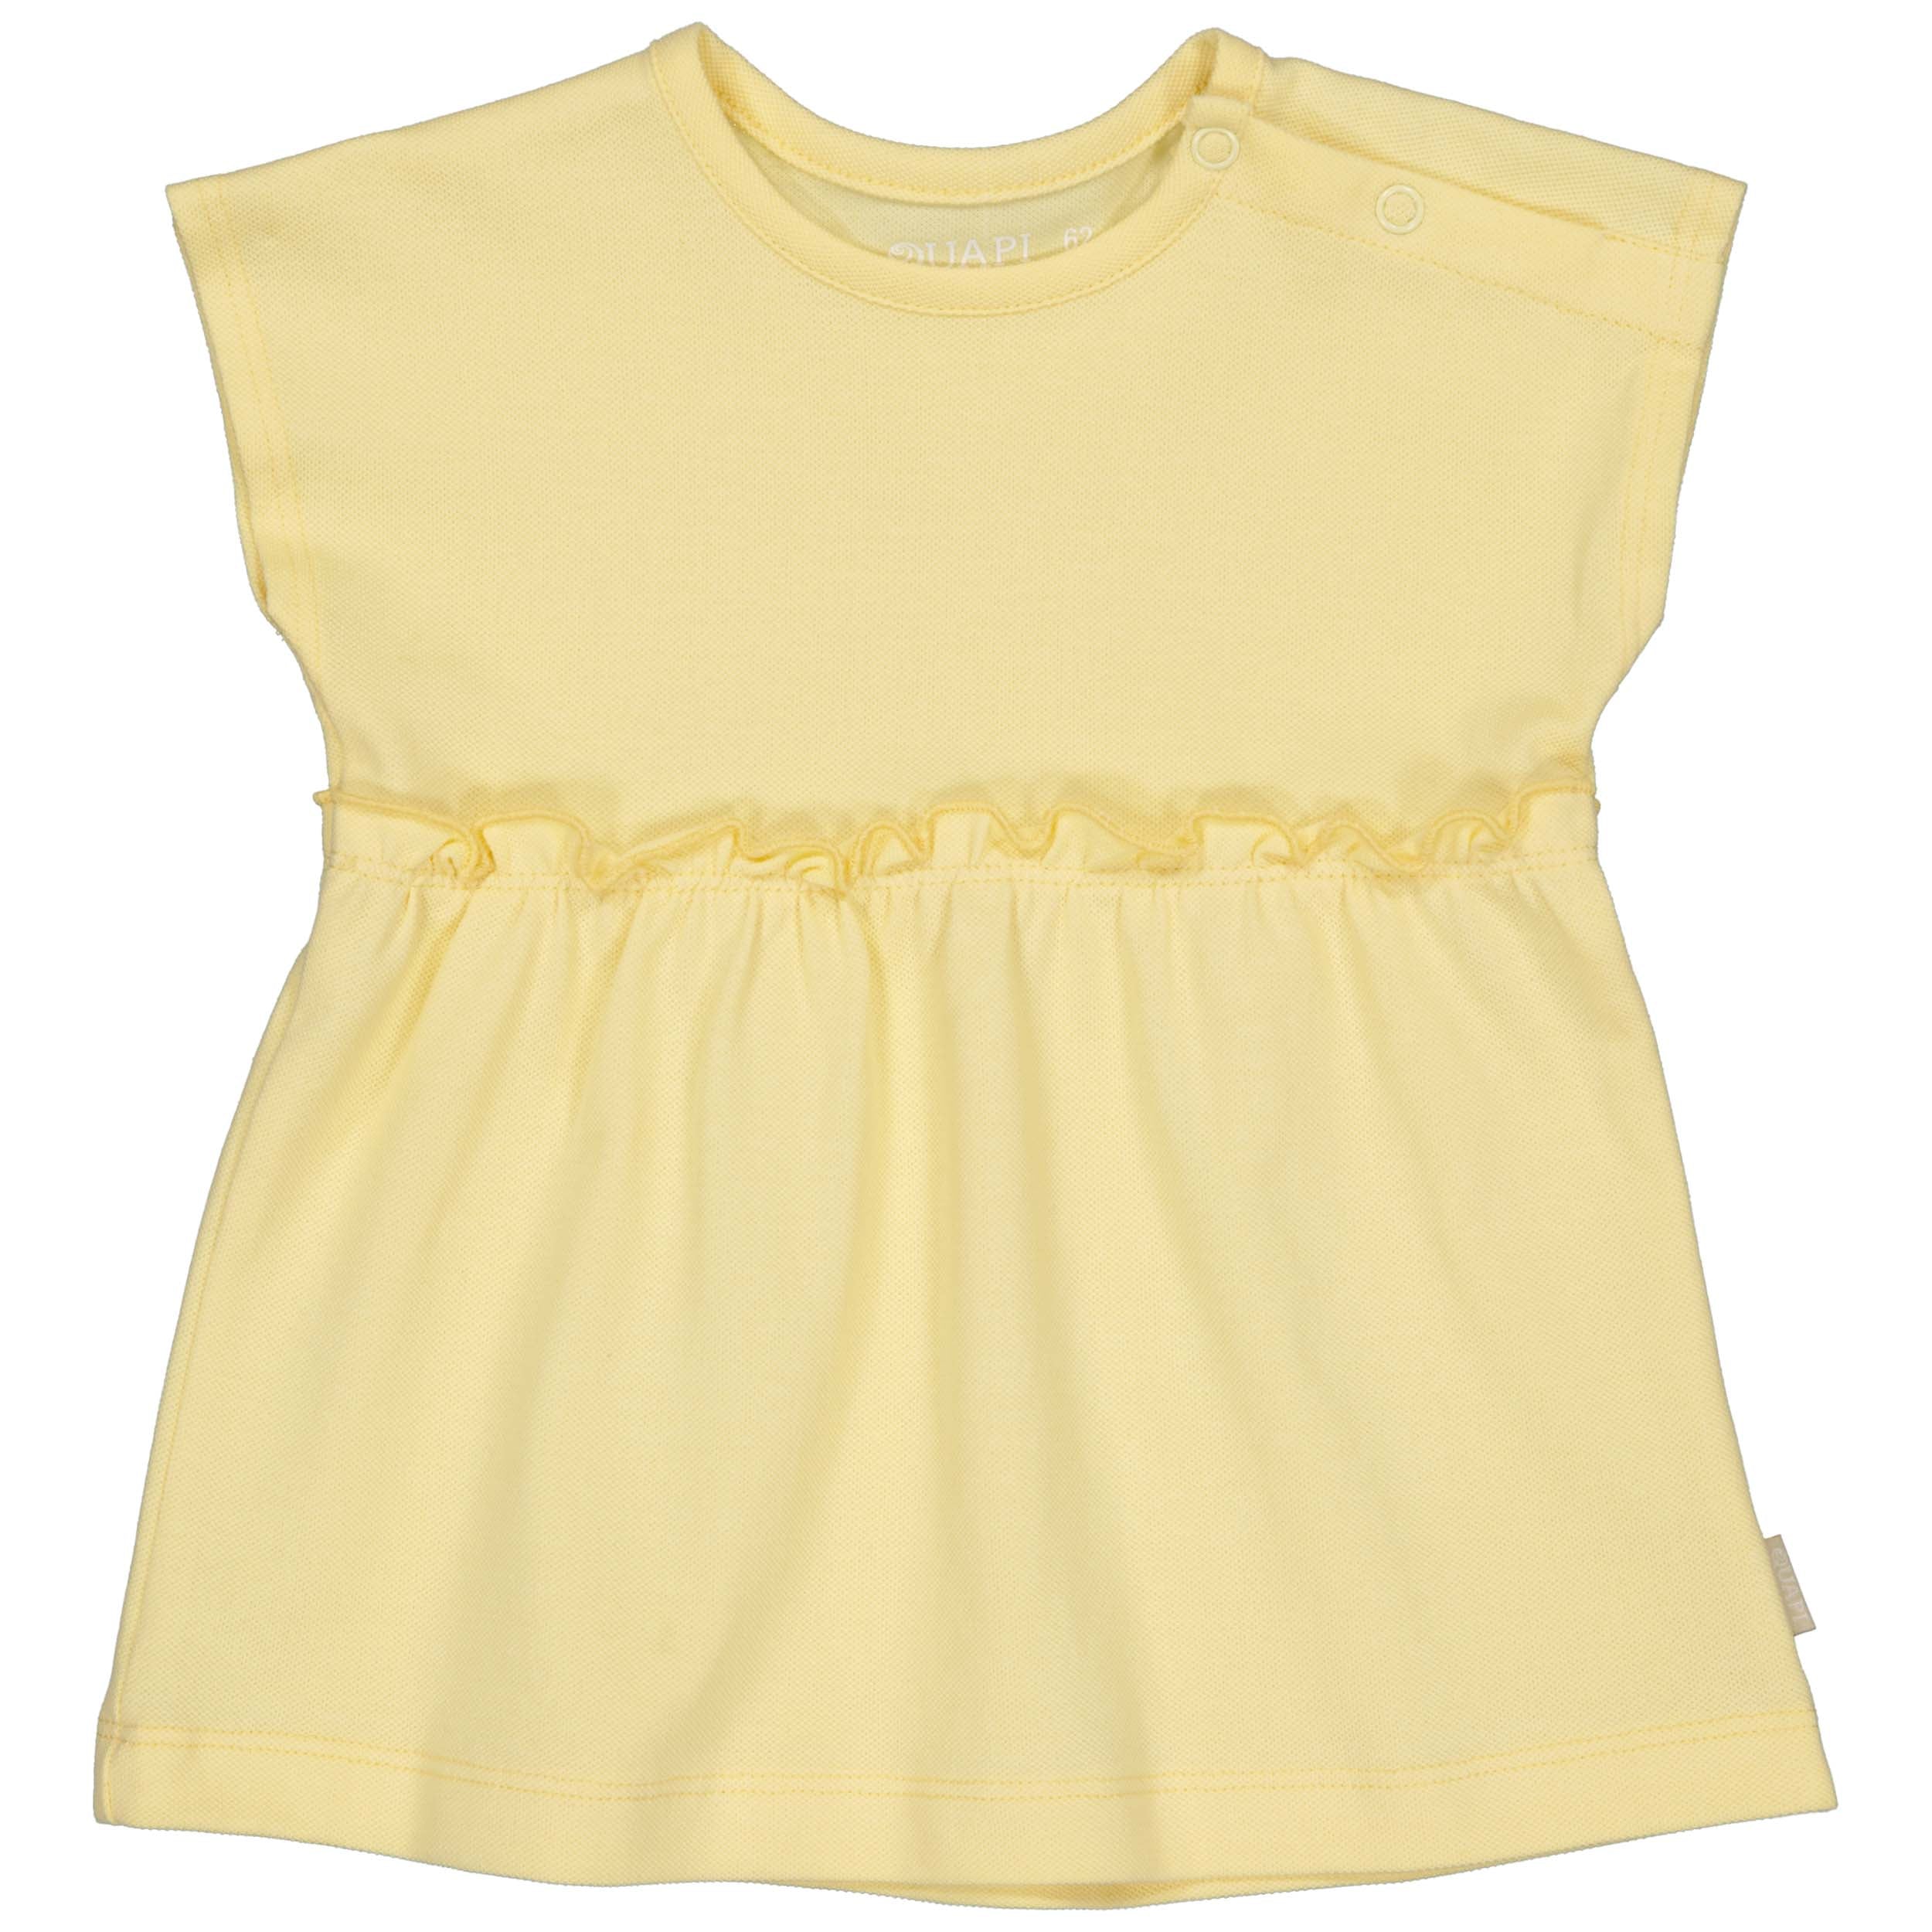 Meisjes Dress Sacha van Quapi Newborn in de kleur Yellow Cream in maat 68.